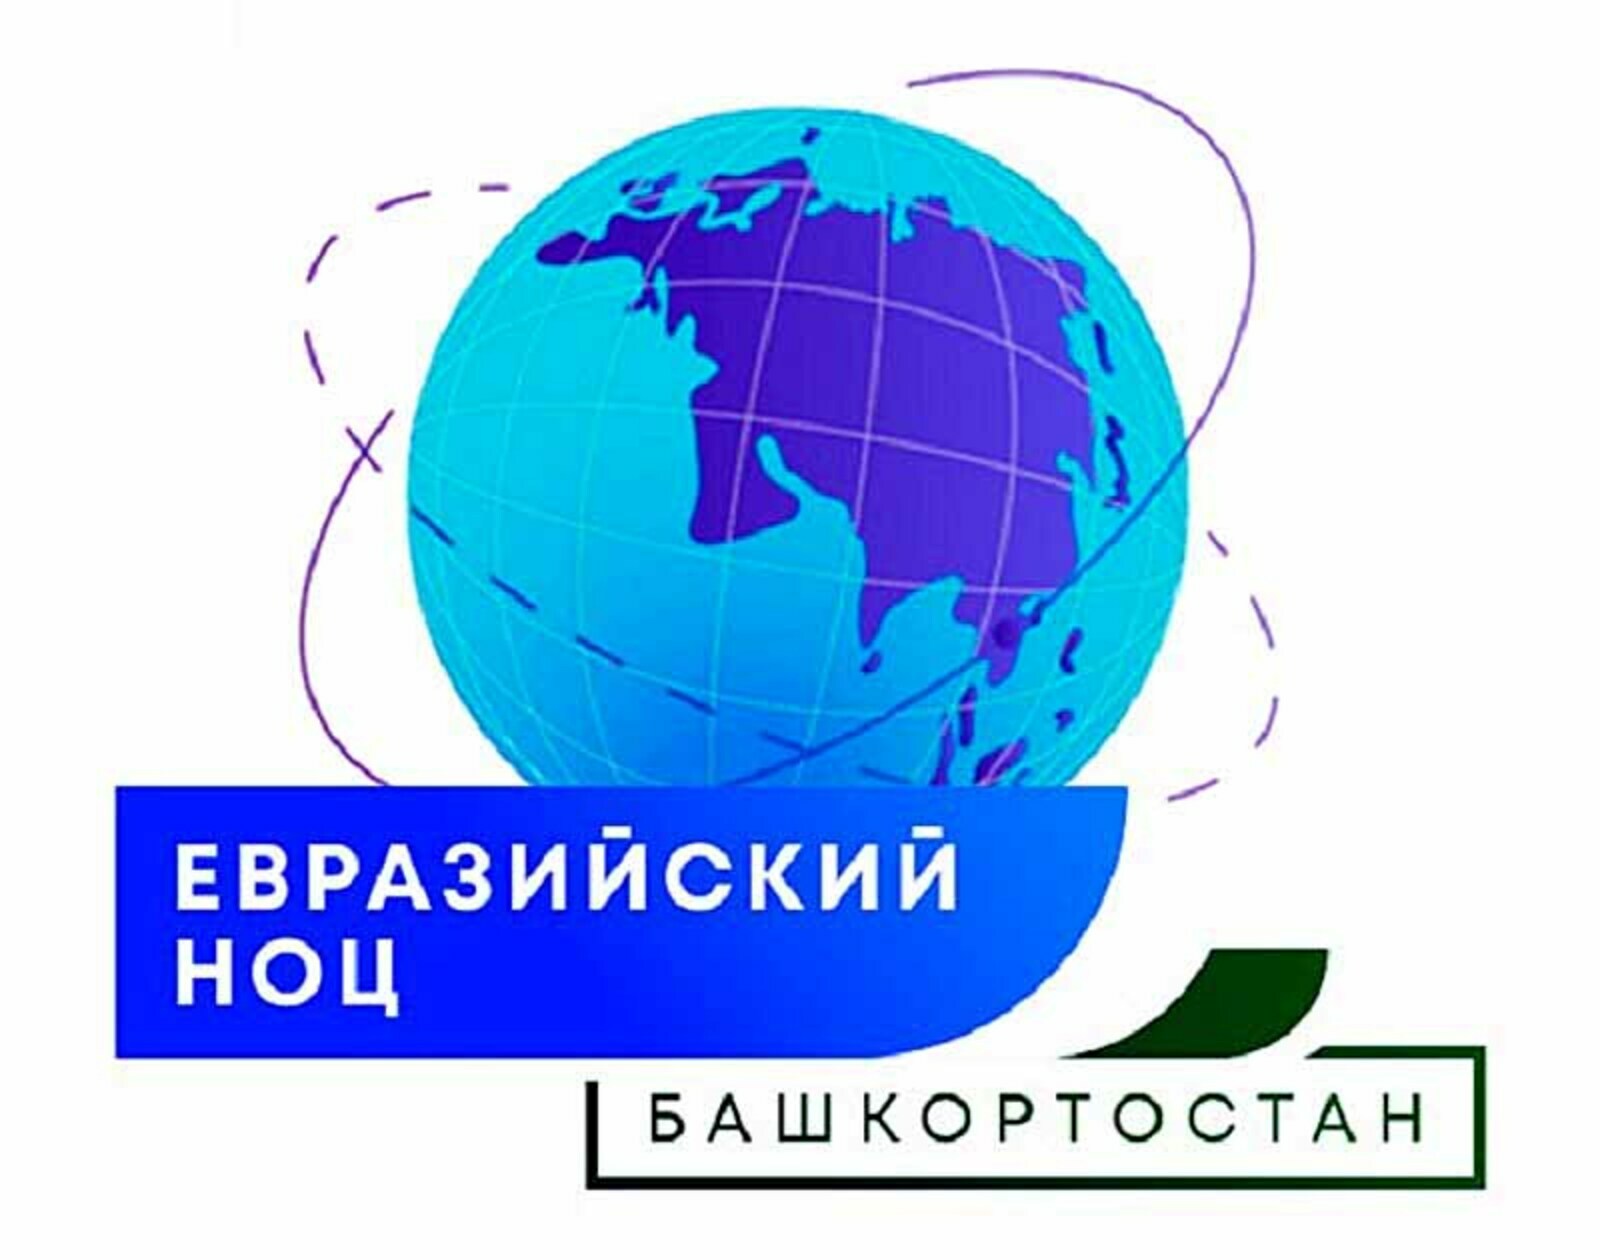 Эксперты Башкортостана высоко оценили объединение вузов и научных организаций региона в мощные консорциумы